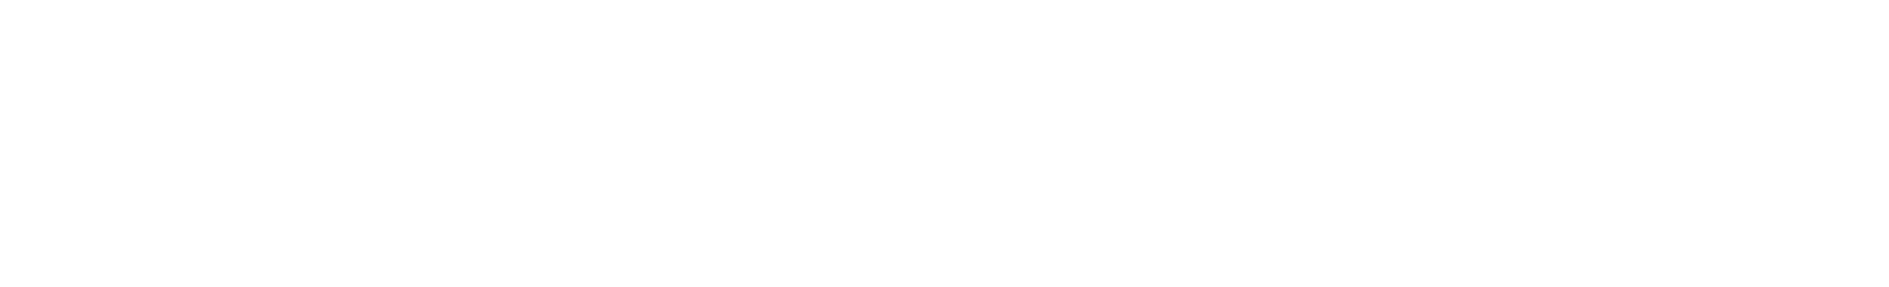 Walt Disney logo large for dark backgrounds (transparent PNG)